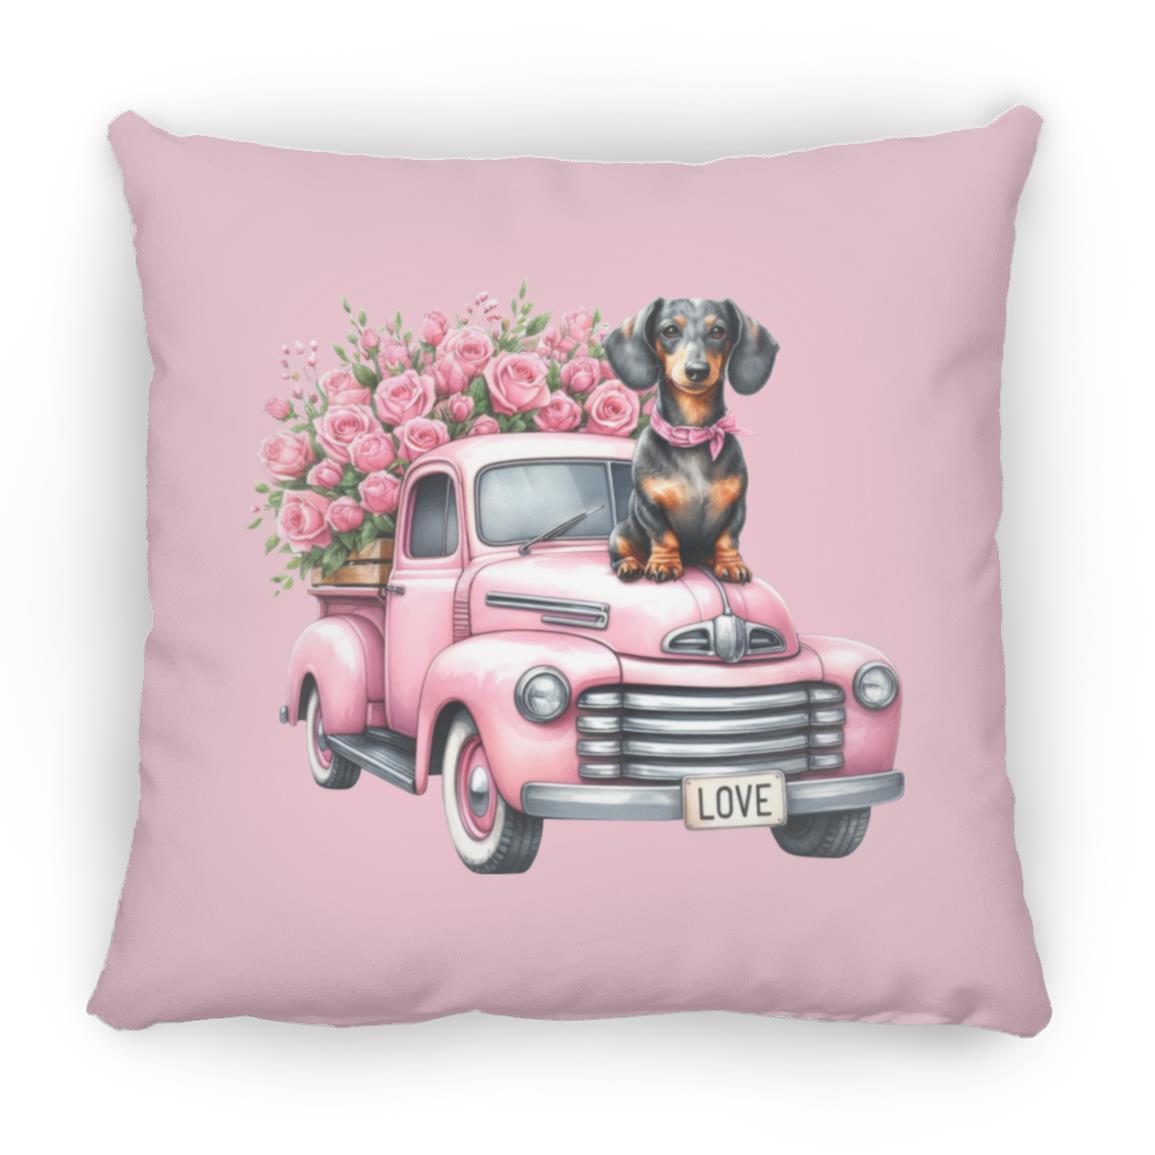 Dachshund Love Truck Pillows